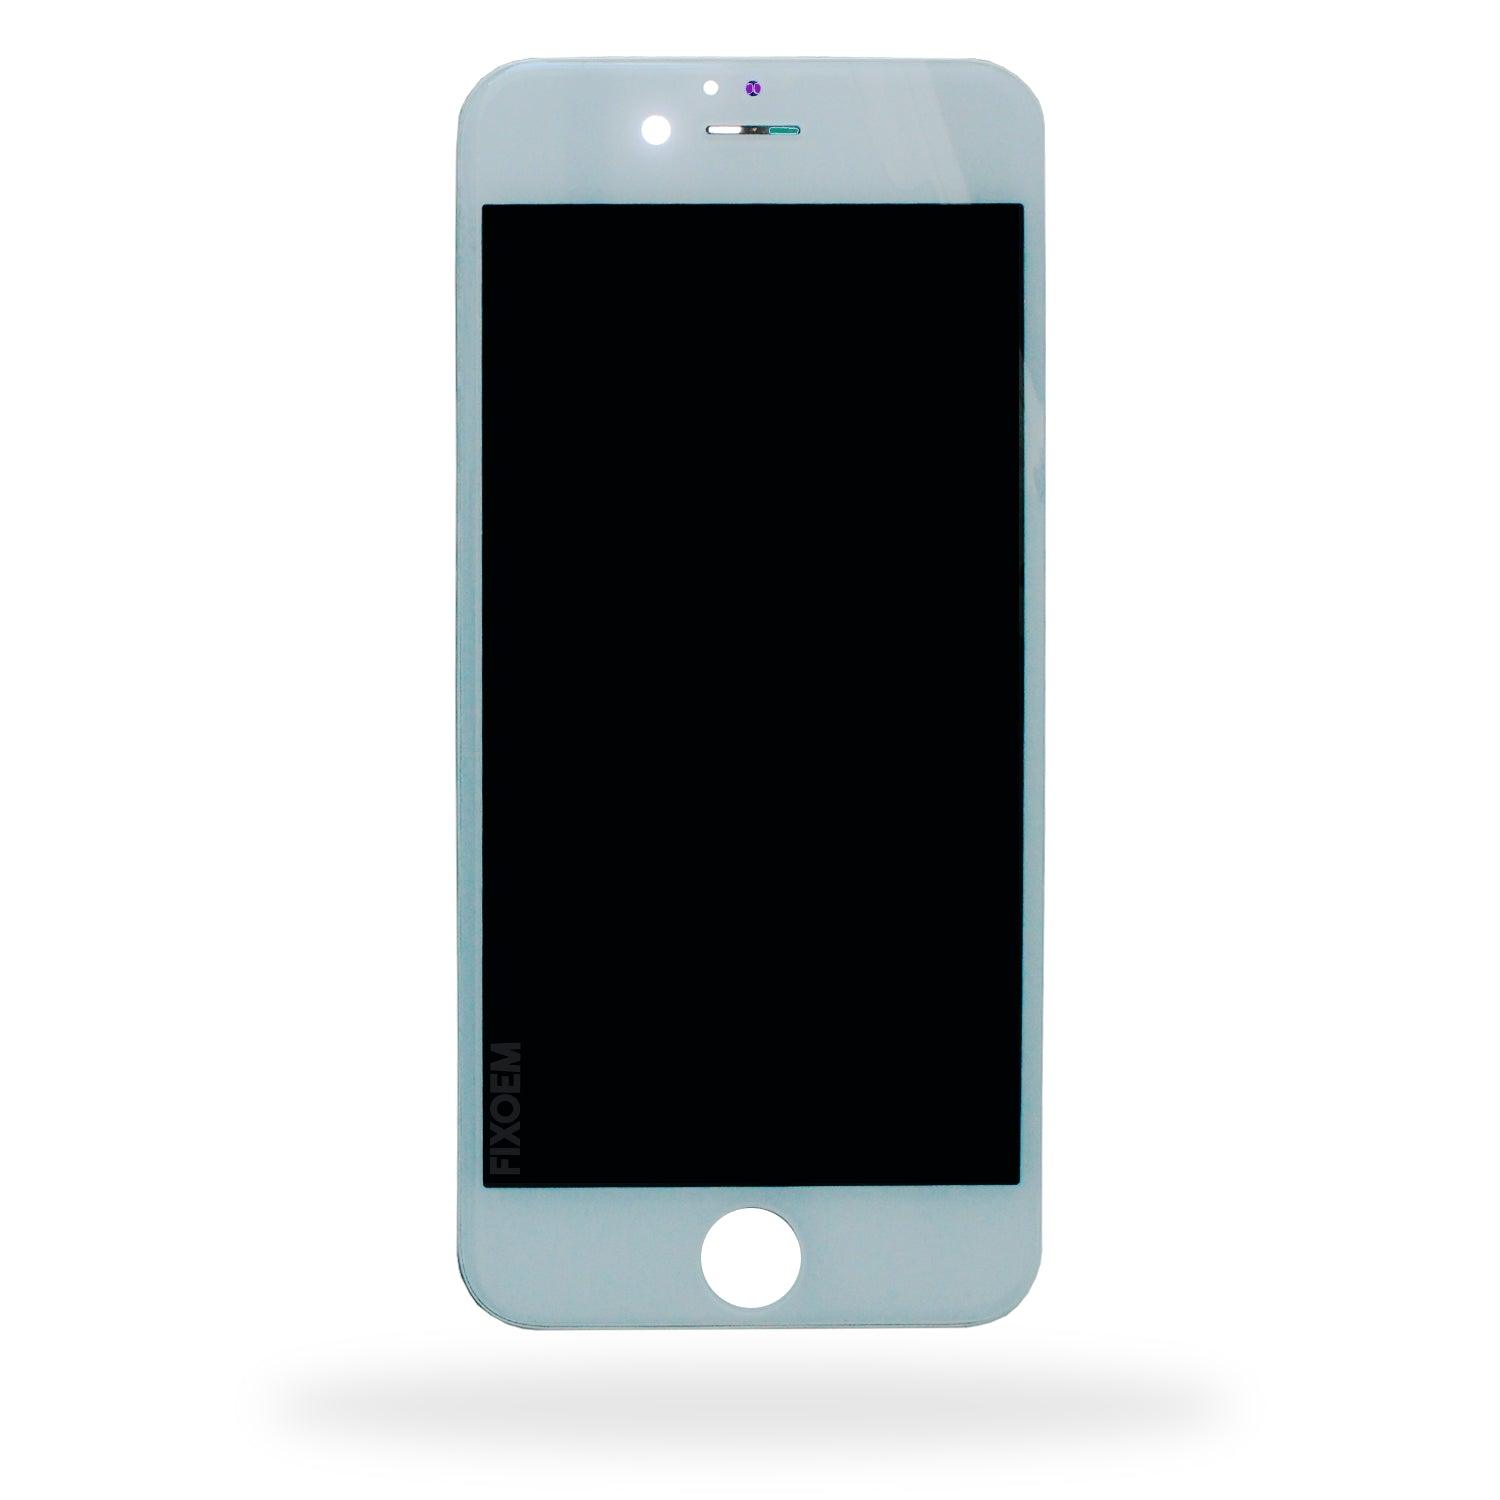 Display Iphone 6 A1549 A1586. a solo $ 180.00 Refaccion y puestos celulares, refurbish y microelectronica.- FixOEM